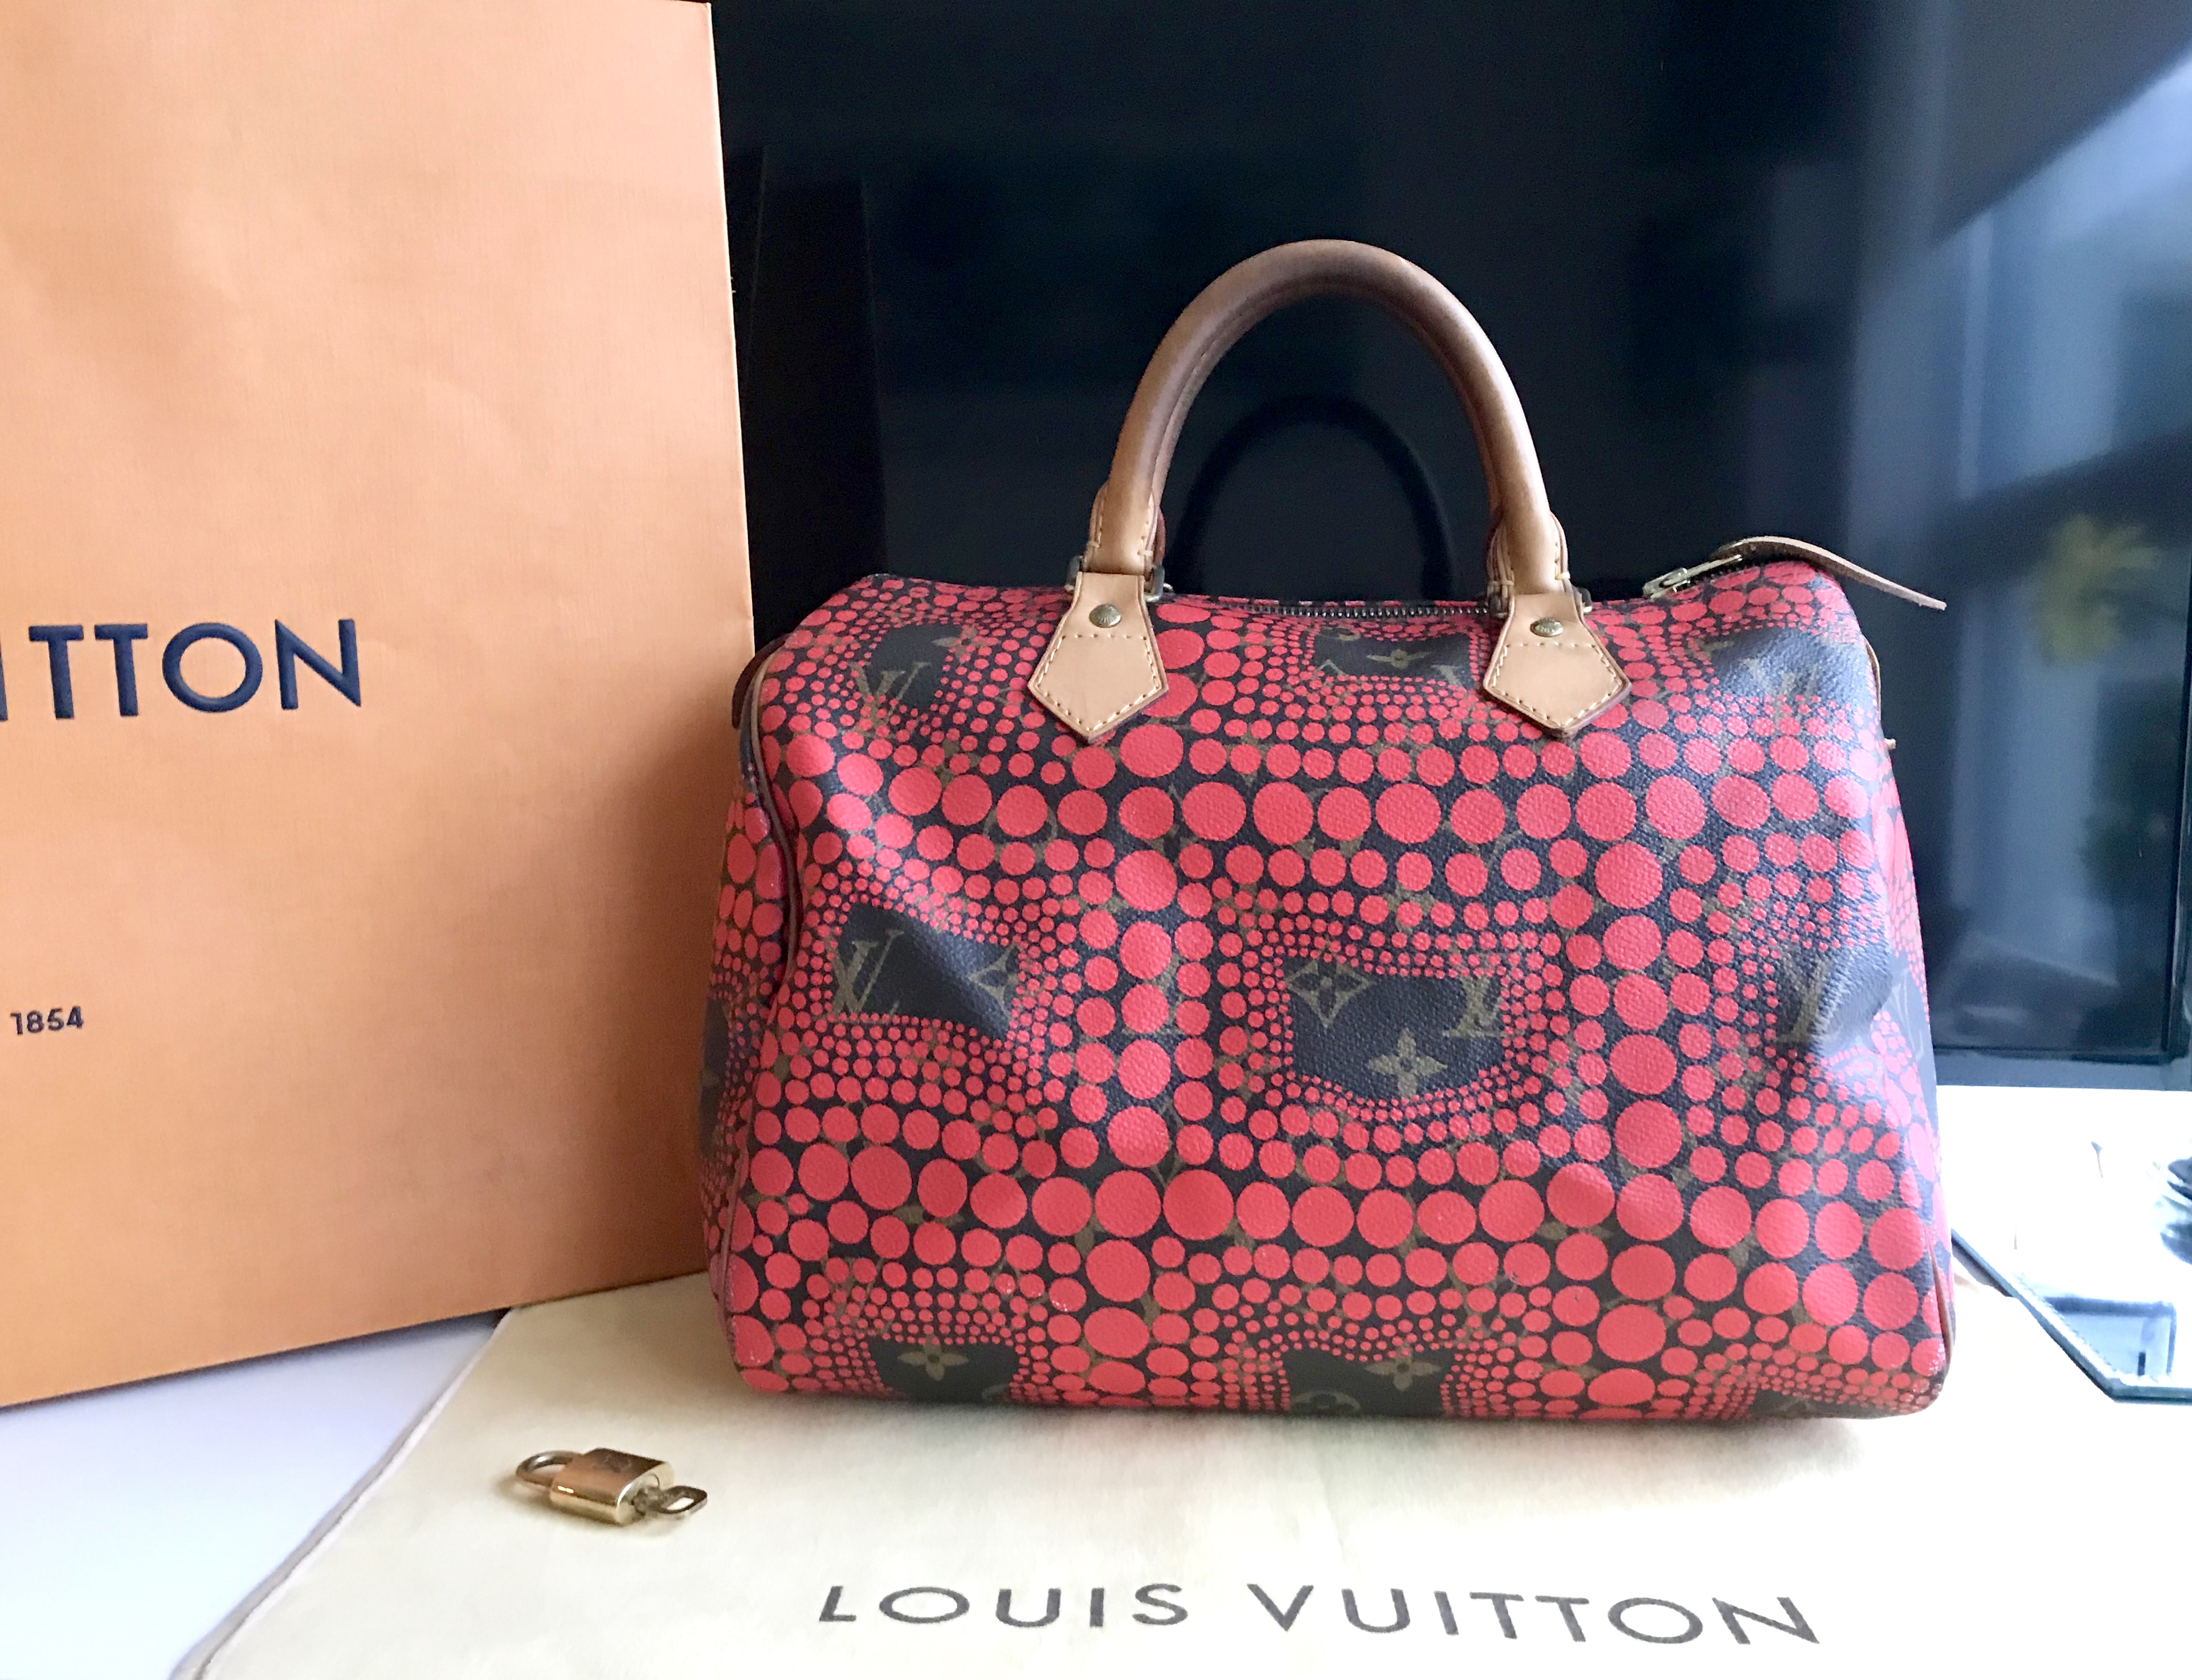 Yayoi Kusama x Louis Vuitton Lockit and Pochette